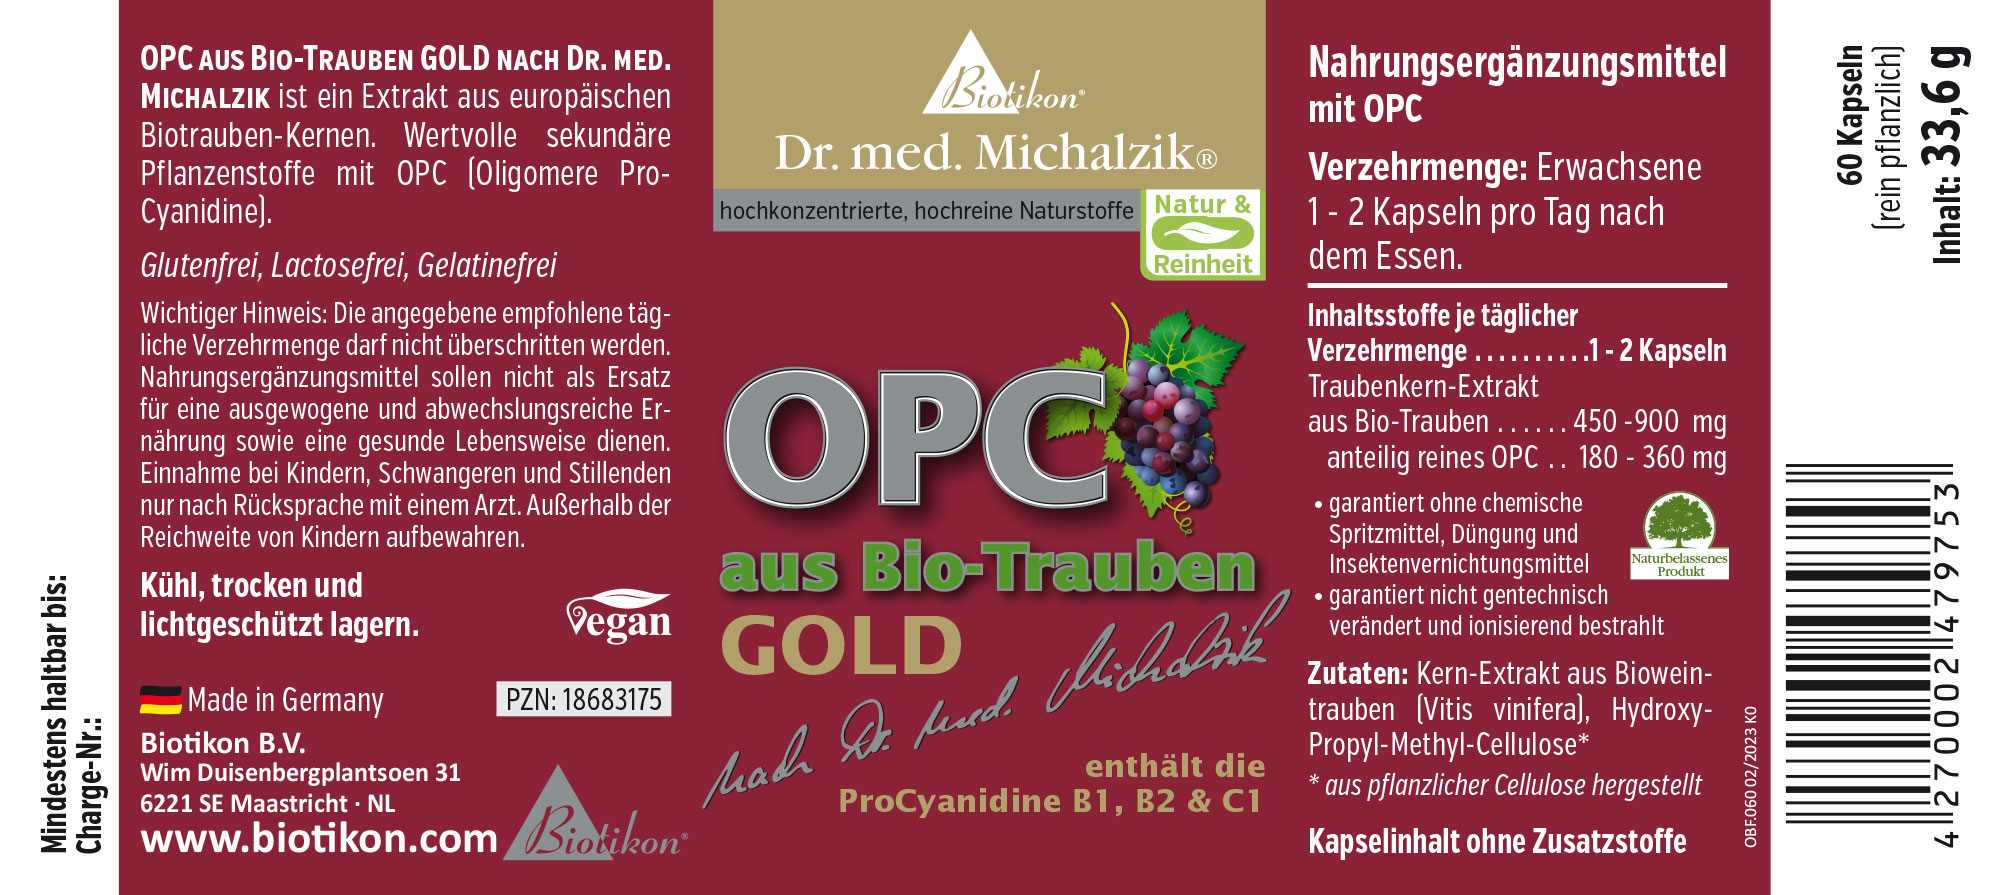 OPC aus Biotrauben GOLD